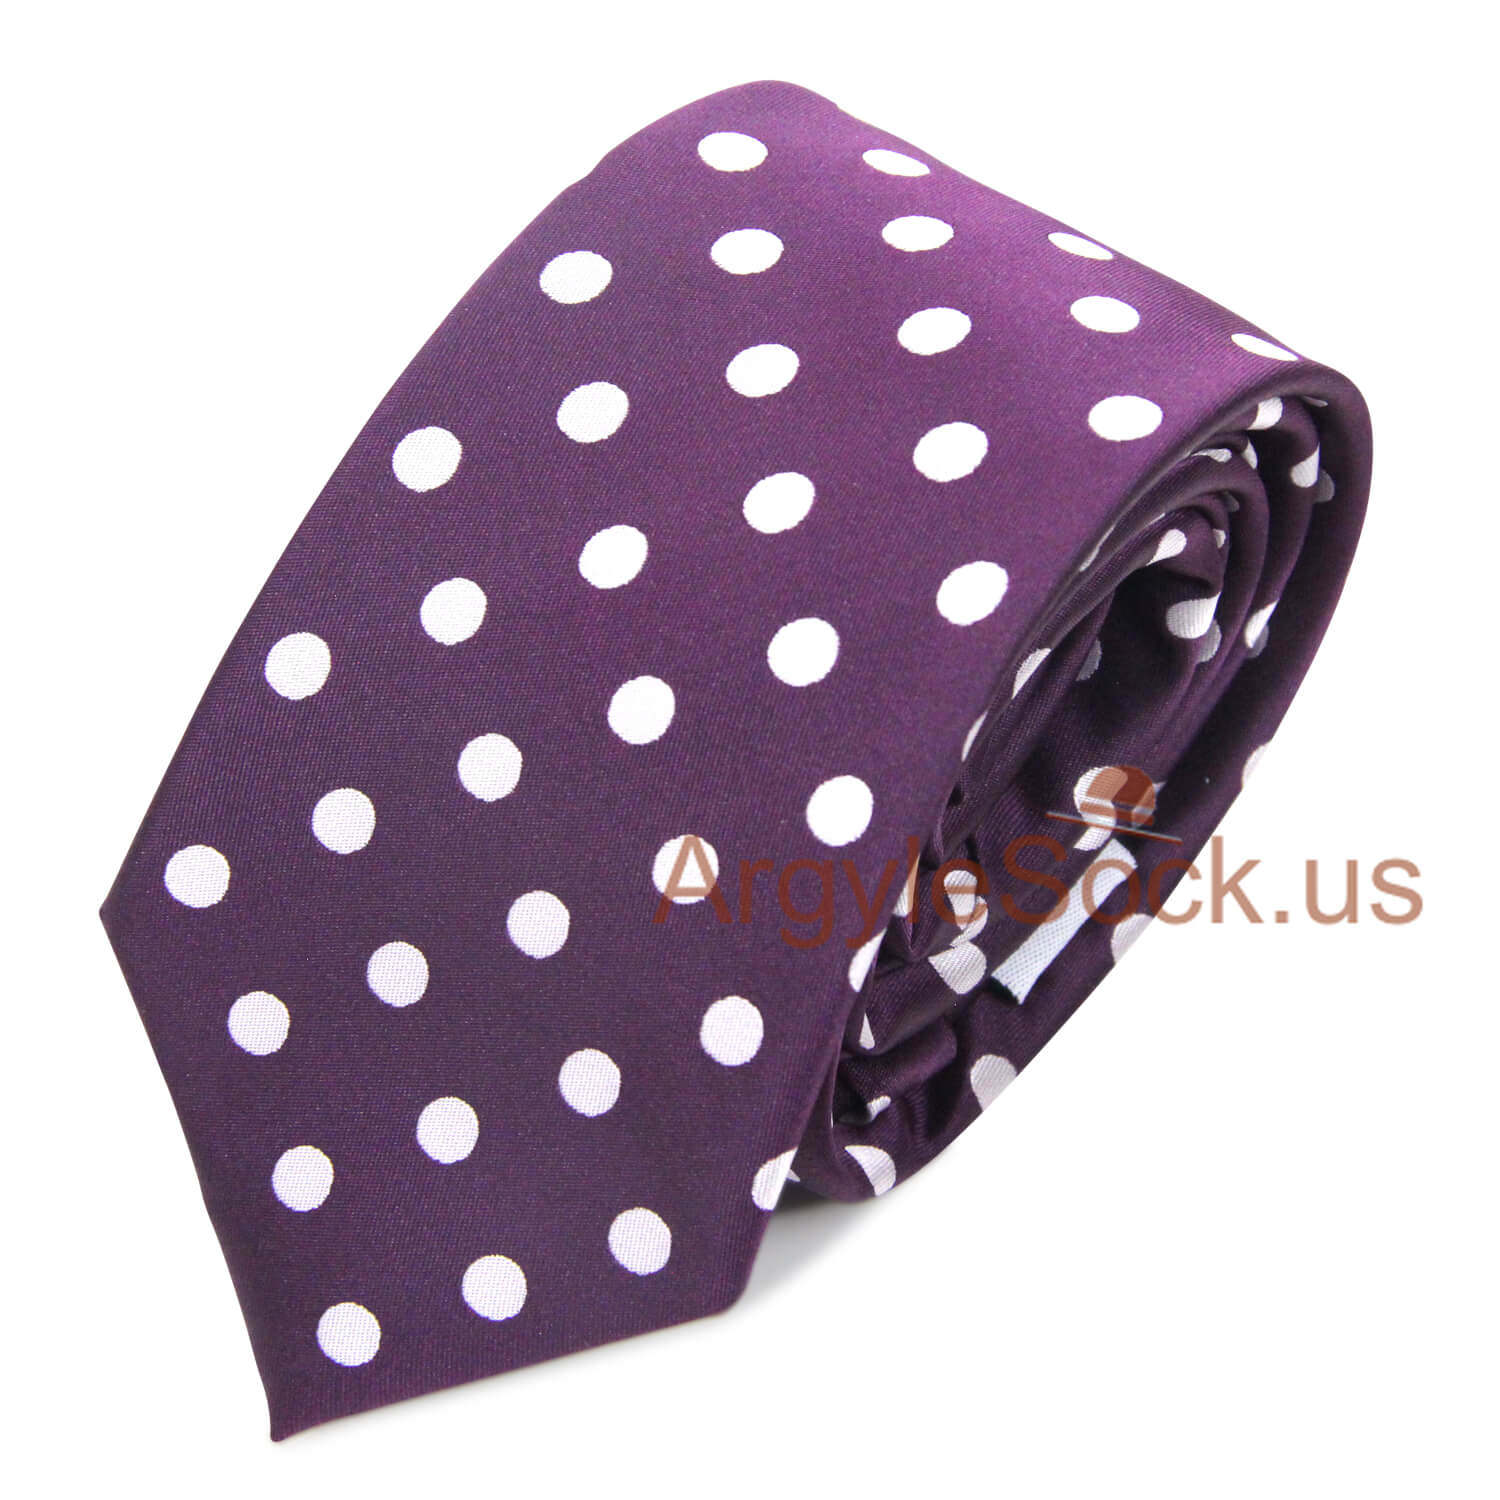 Plum Purple Dots Groomsmen/Costume Necktie